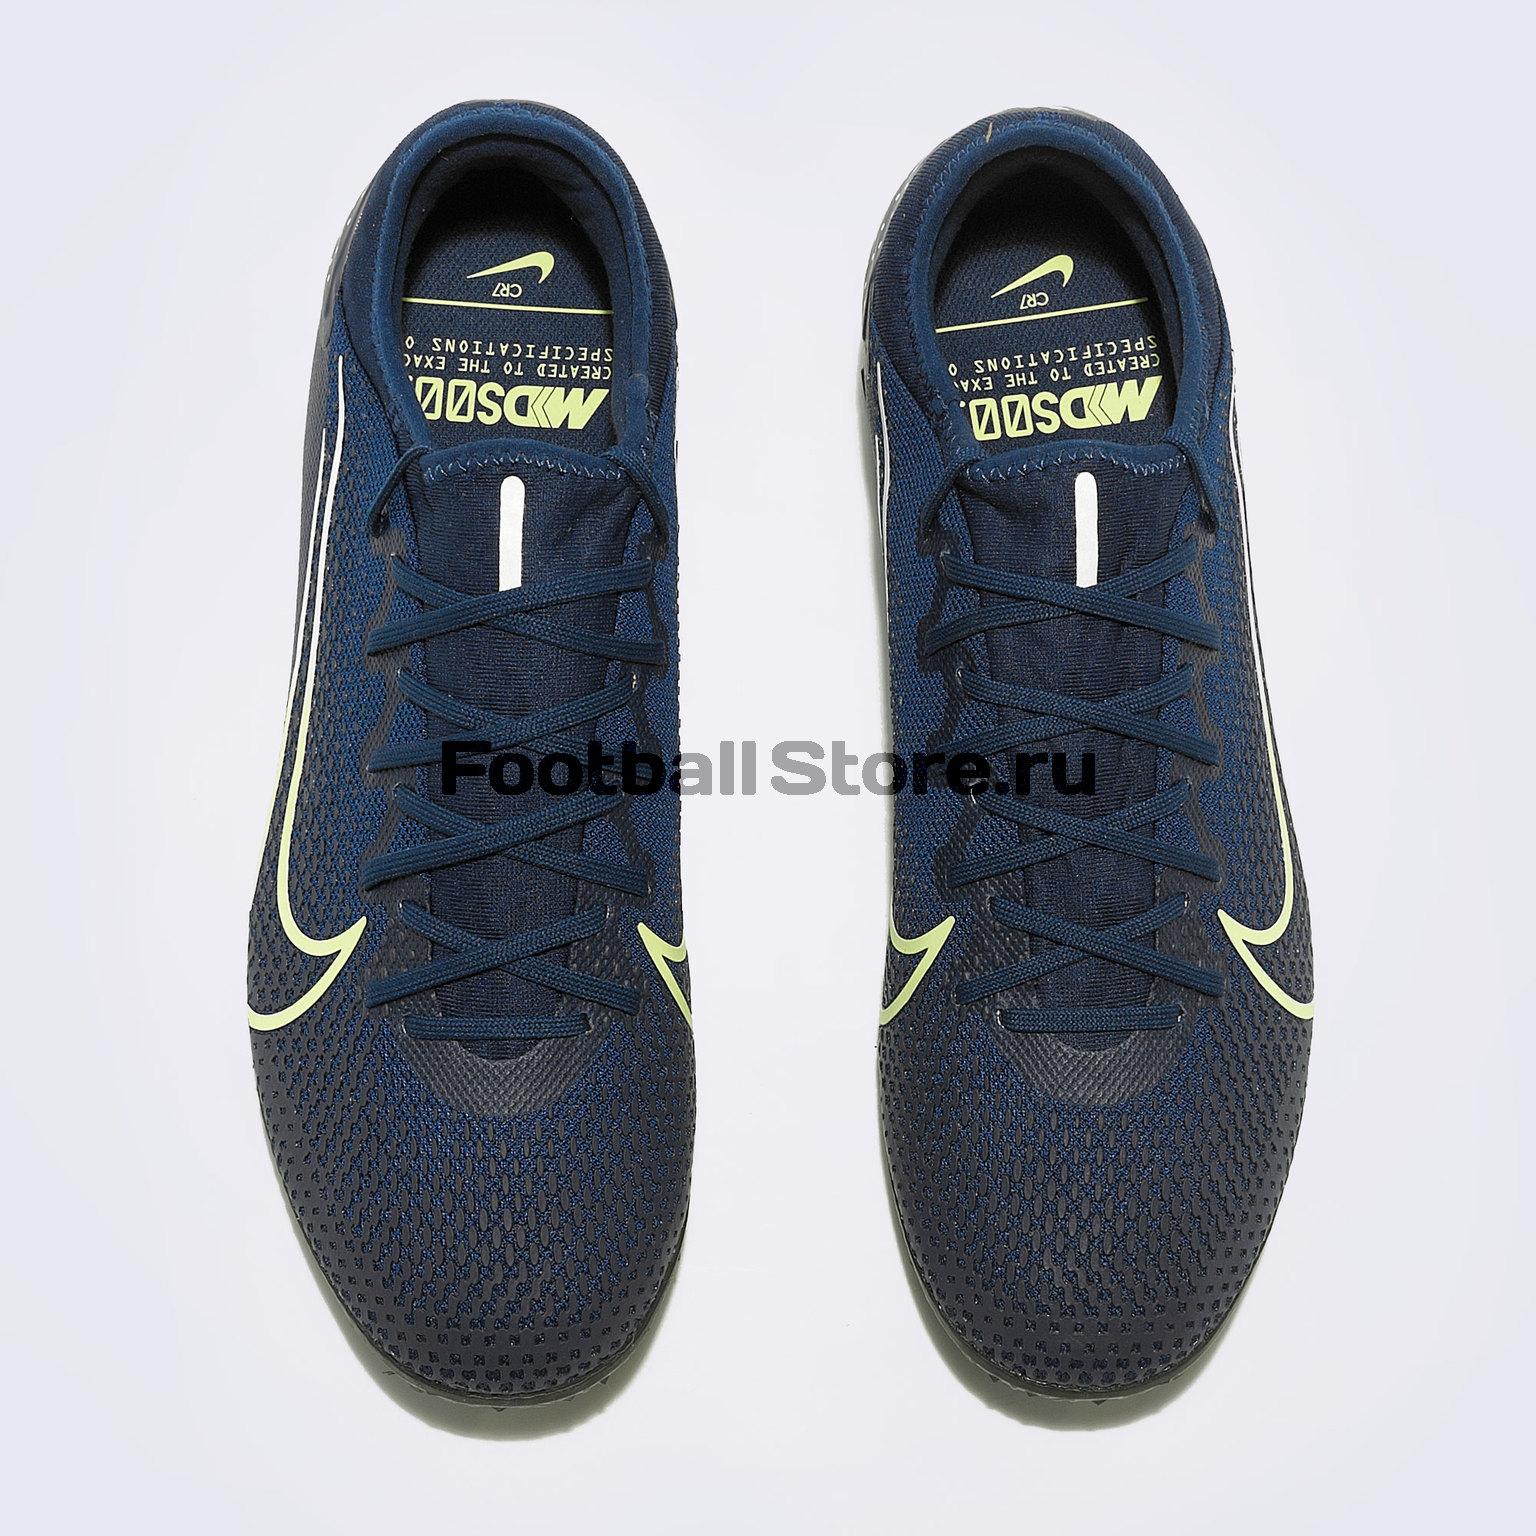 Шиповки Nike Vapor 13 Pro MDS TF CJ1307-401